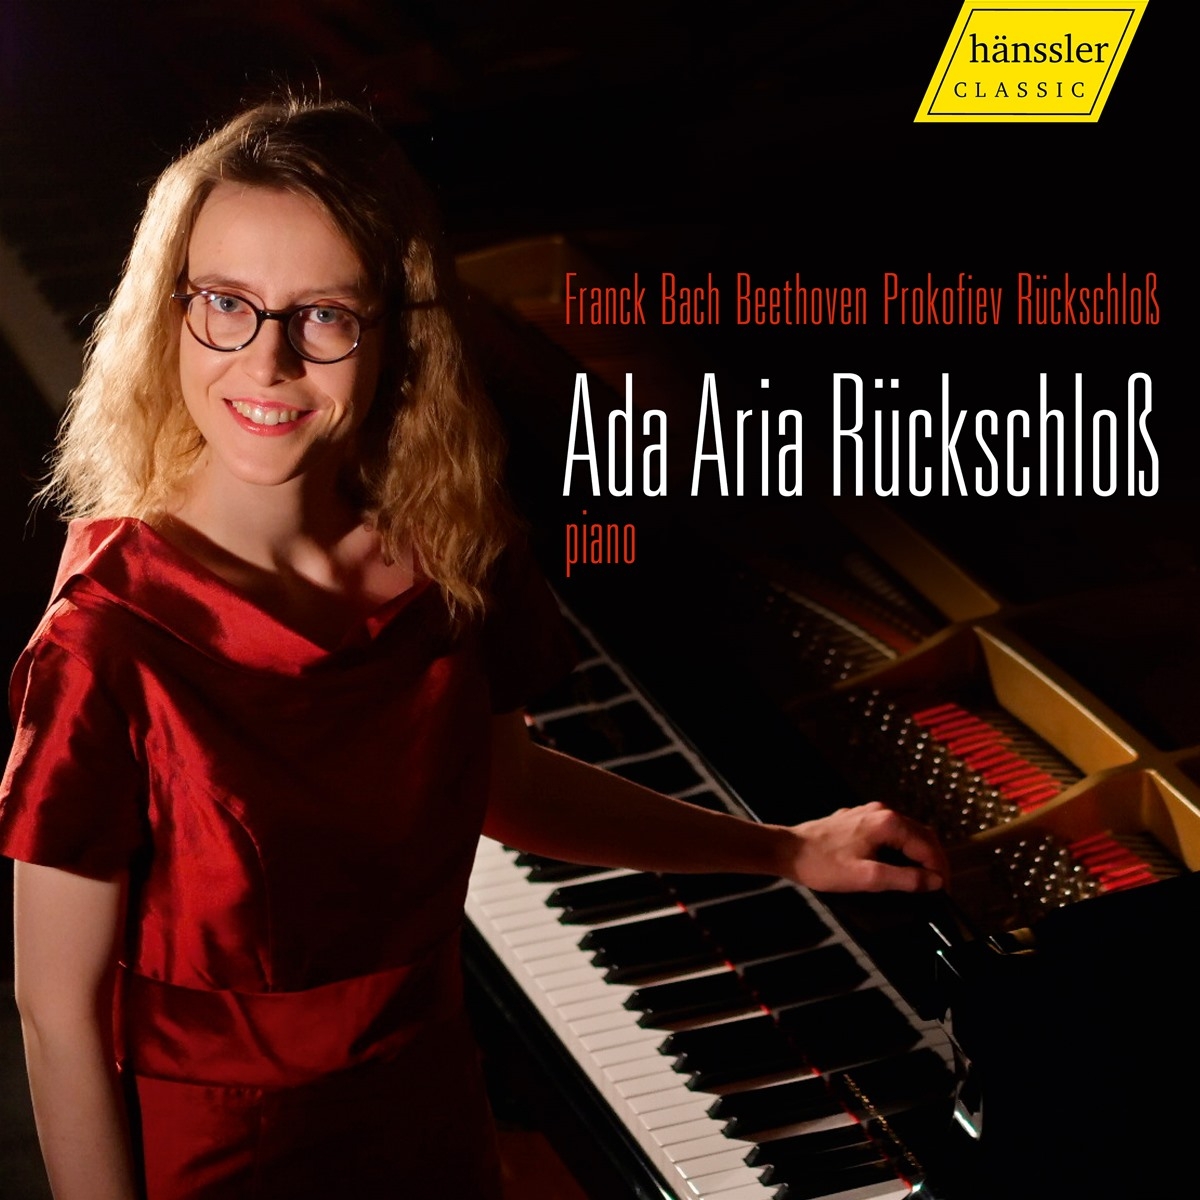 Ada Aria Rückschloß